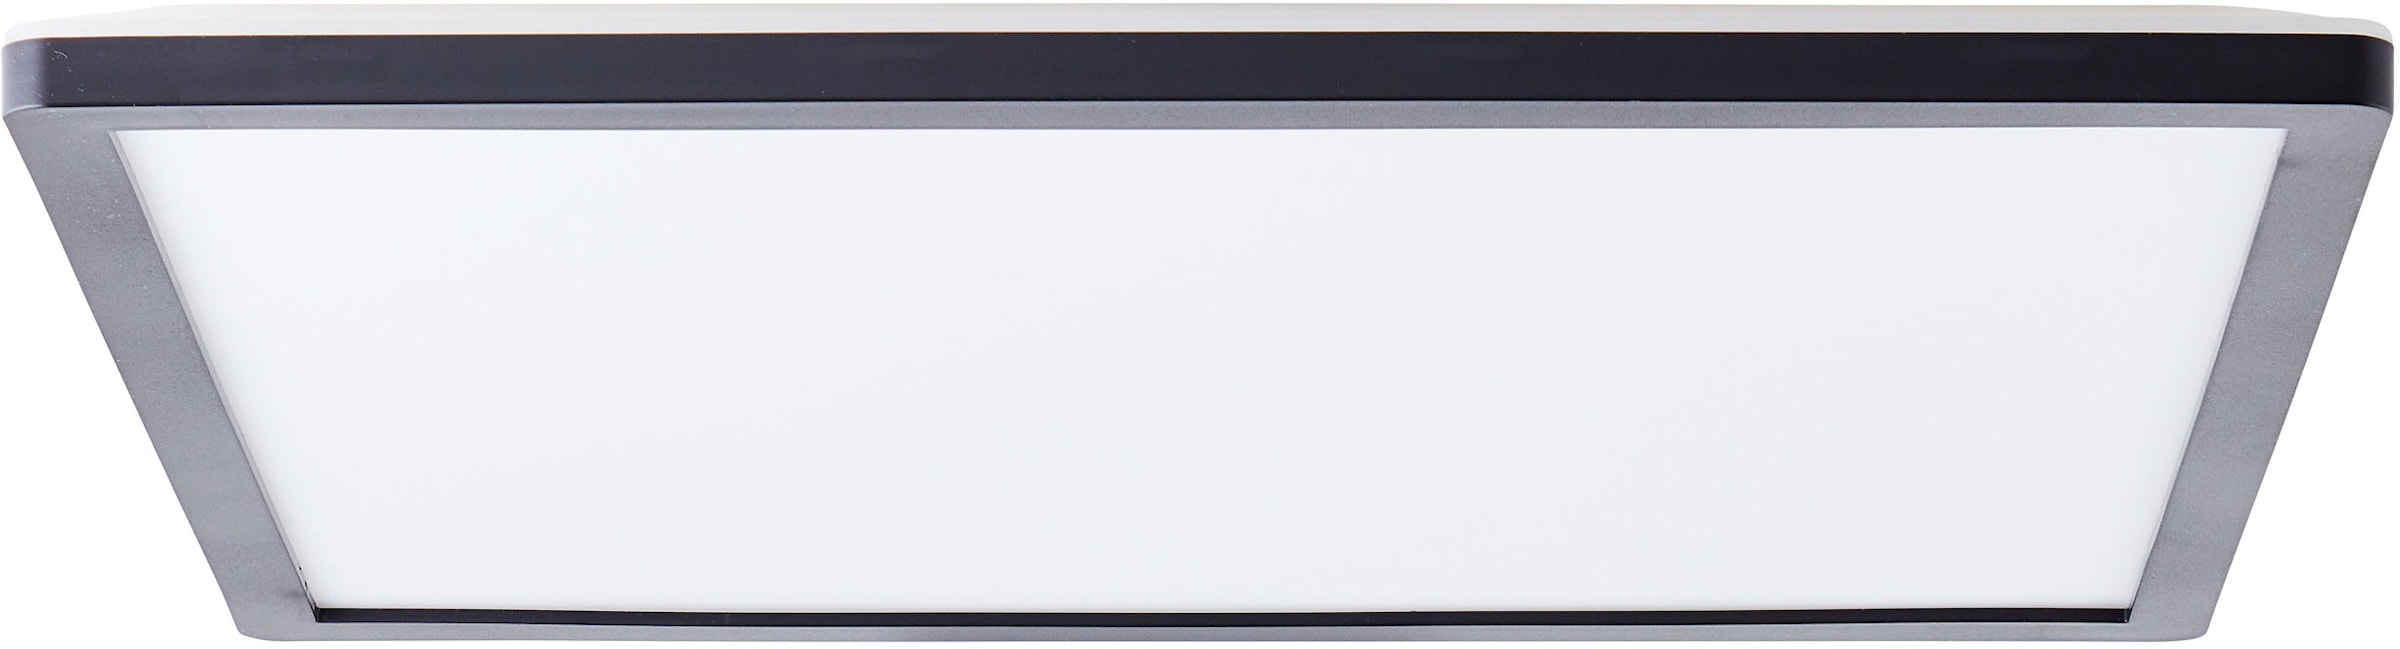 LED Deckenleuchte »Evita«, 42 x 42 cm, 3200 Lumen, 4000 Kelvin, schwarz/weiß